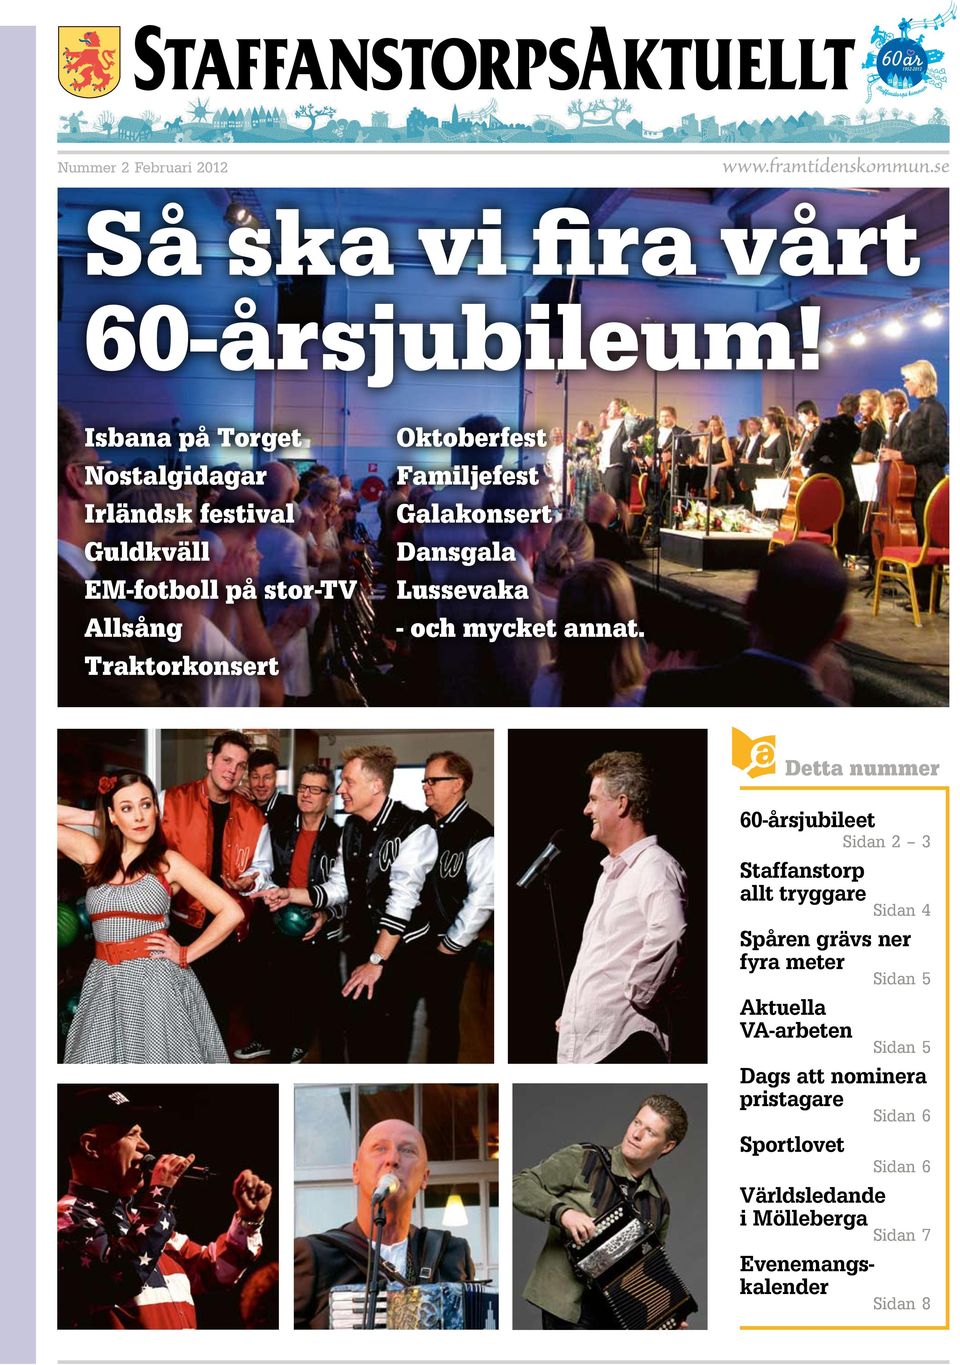 Familjefest Galakonsert Dansgala Lussevaka - och mycket annat.